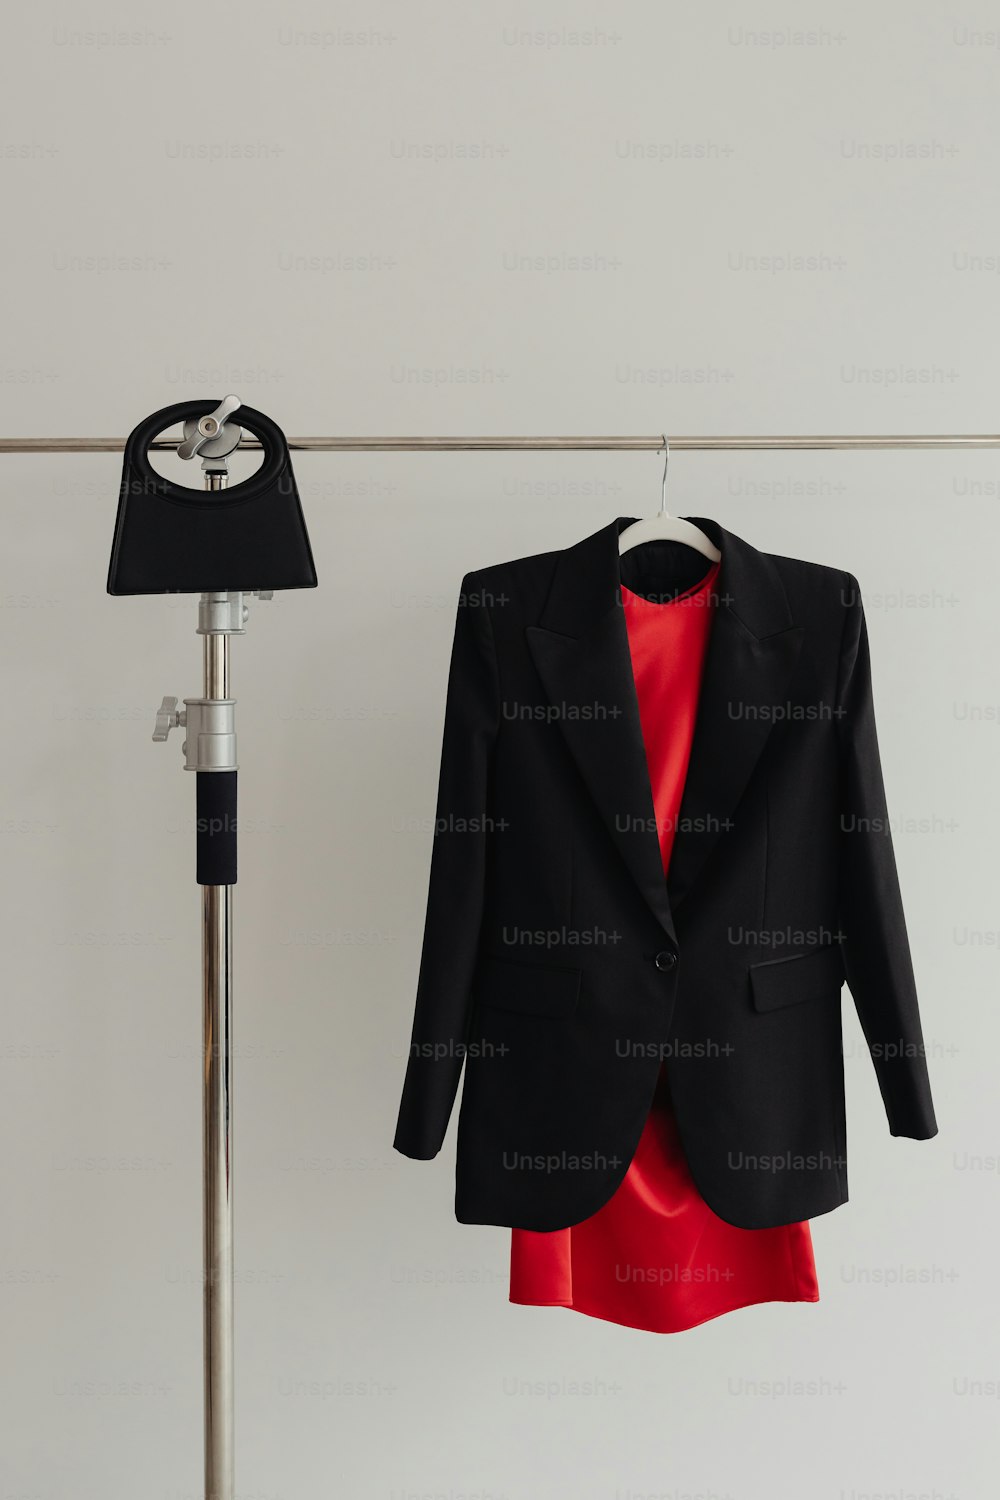 una chaqueta negra colgada en un tendedero junto a un vestido rojo